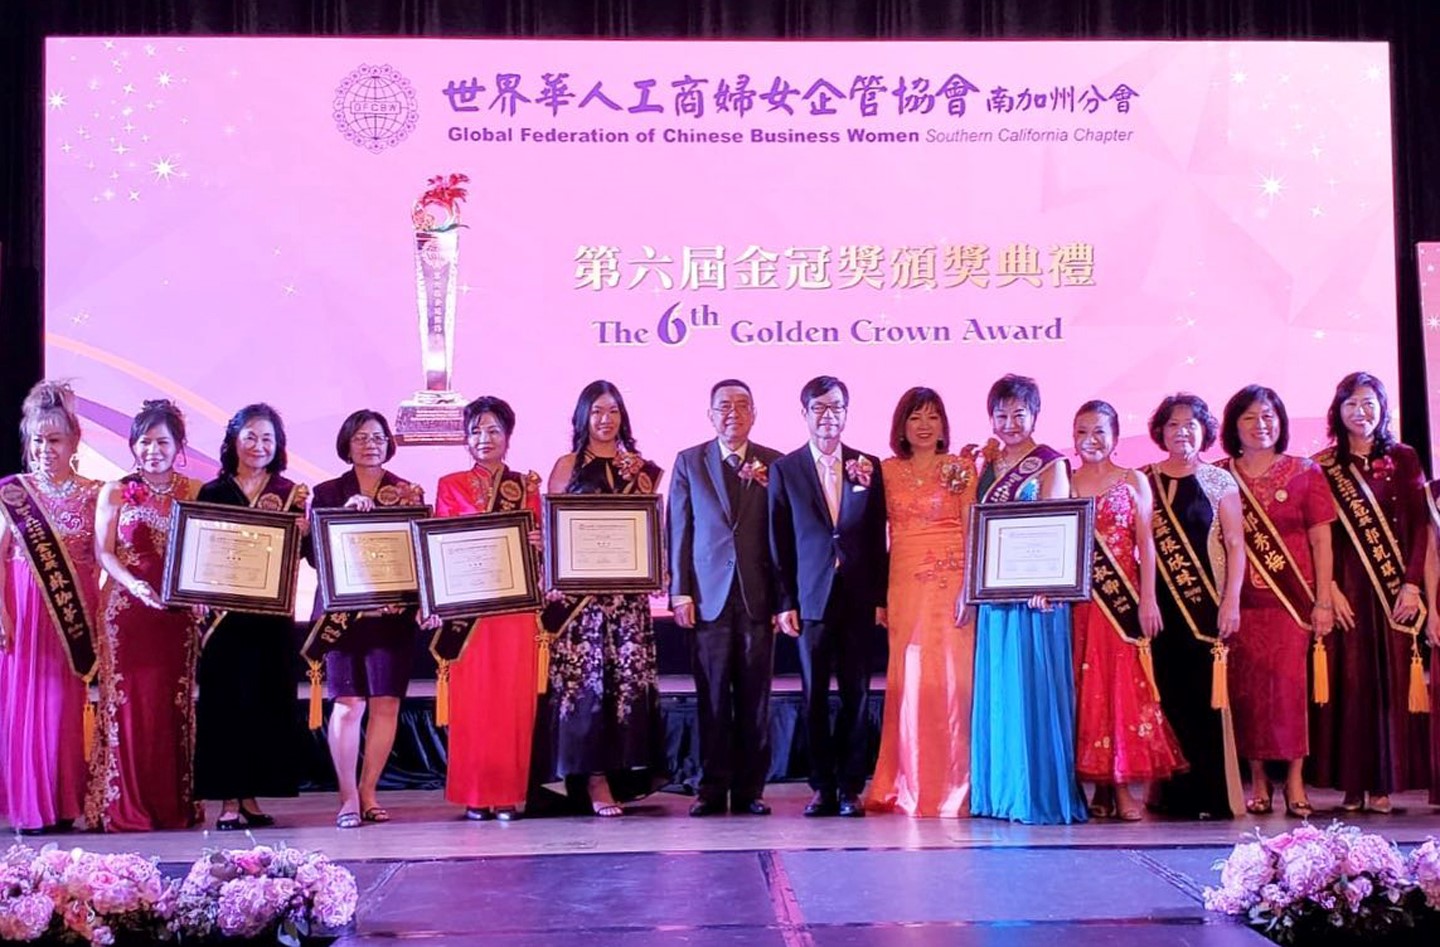 世界華人工商婦女企管協會南加州分會第六屆「金冠獎」楊安立律師獲獎